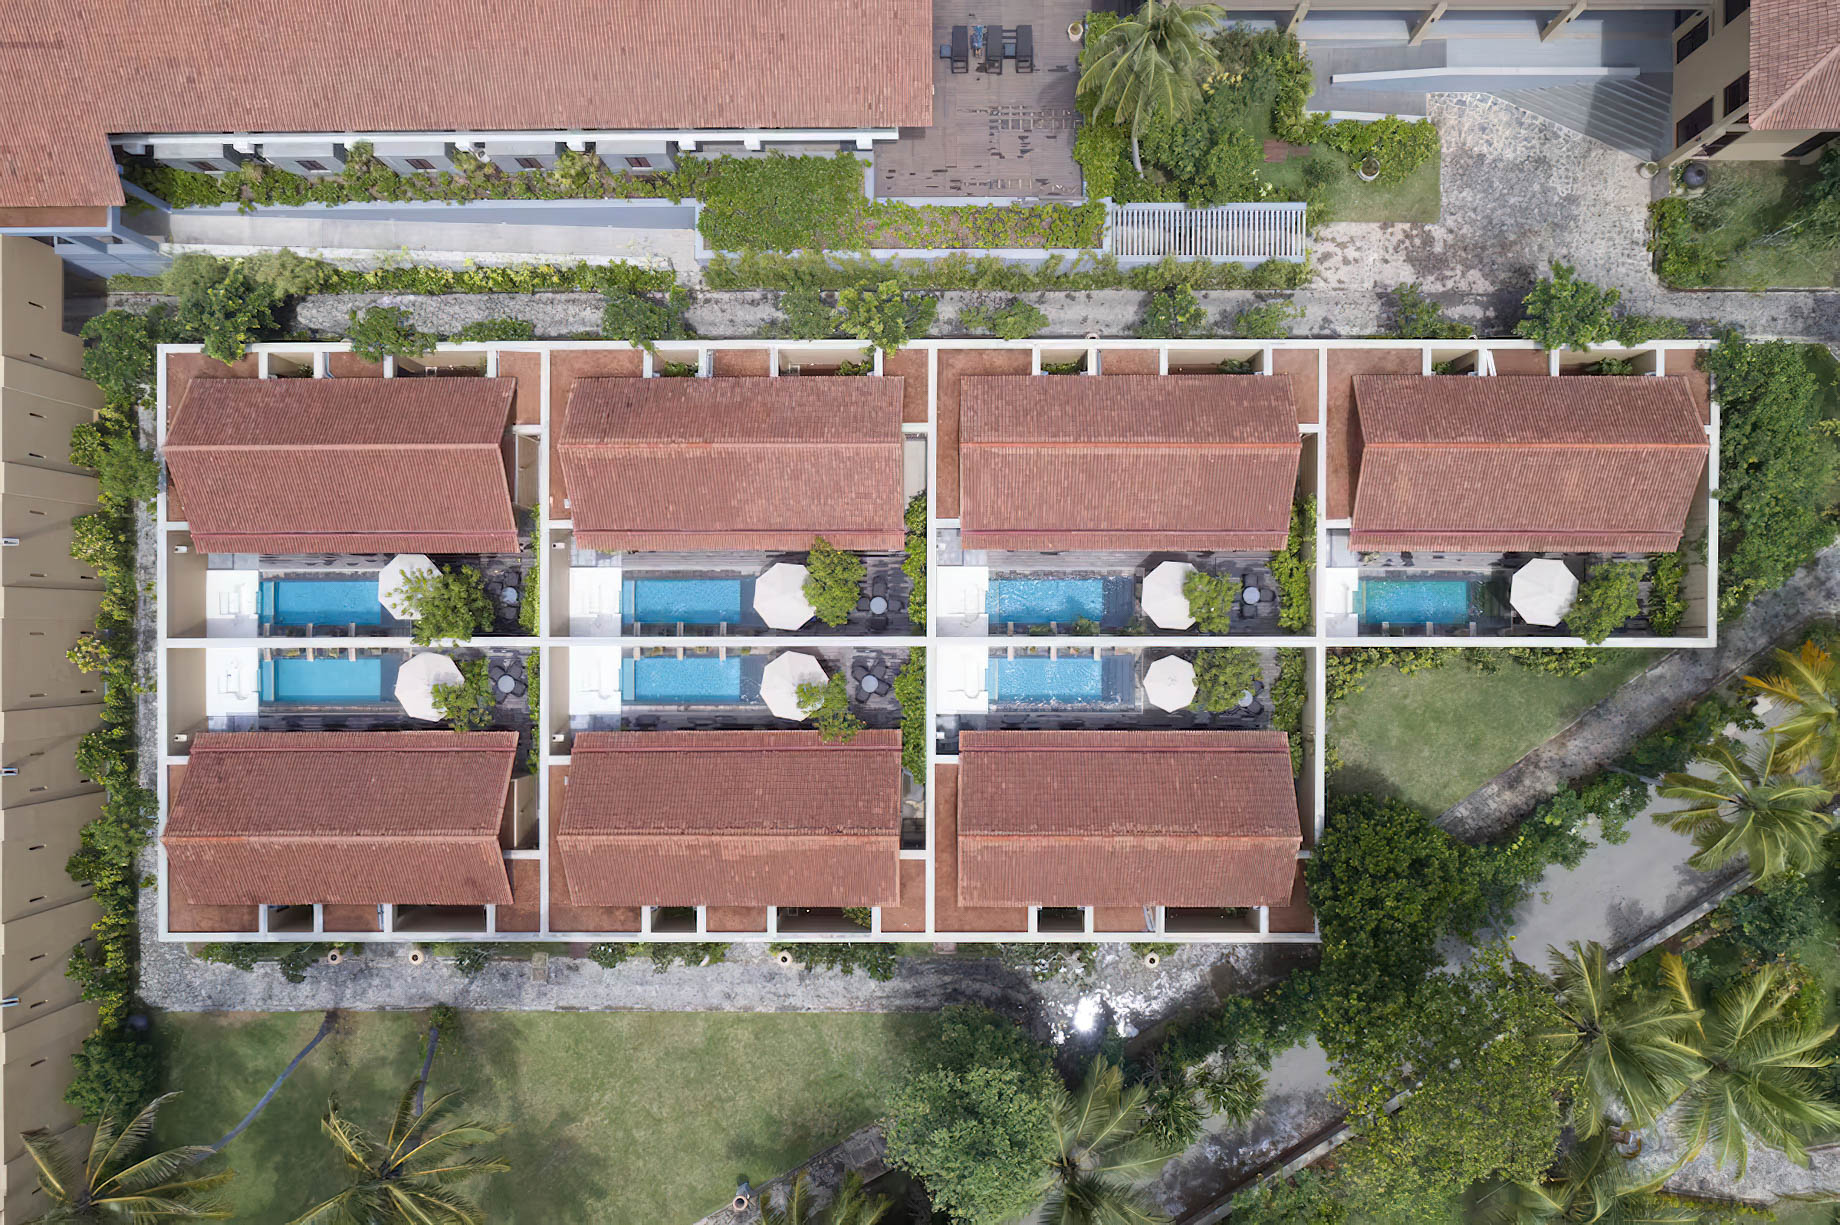 Anantara Kalutara Resort – Sri Lanka – Aerial View